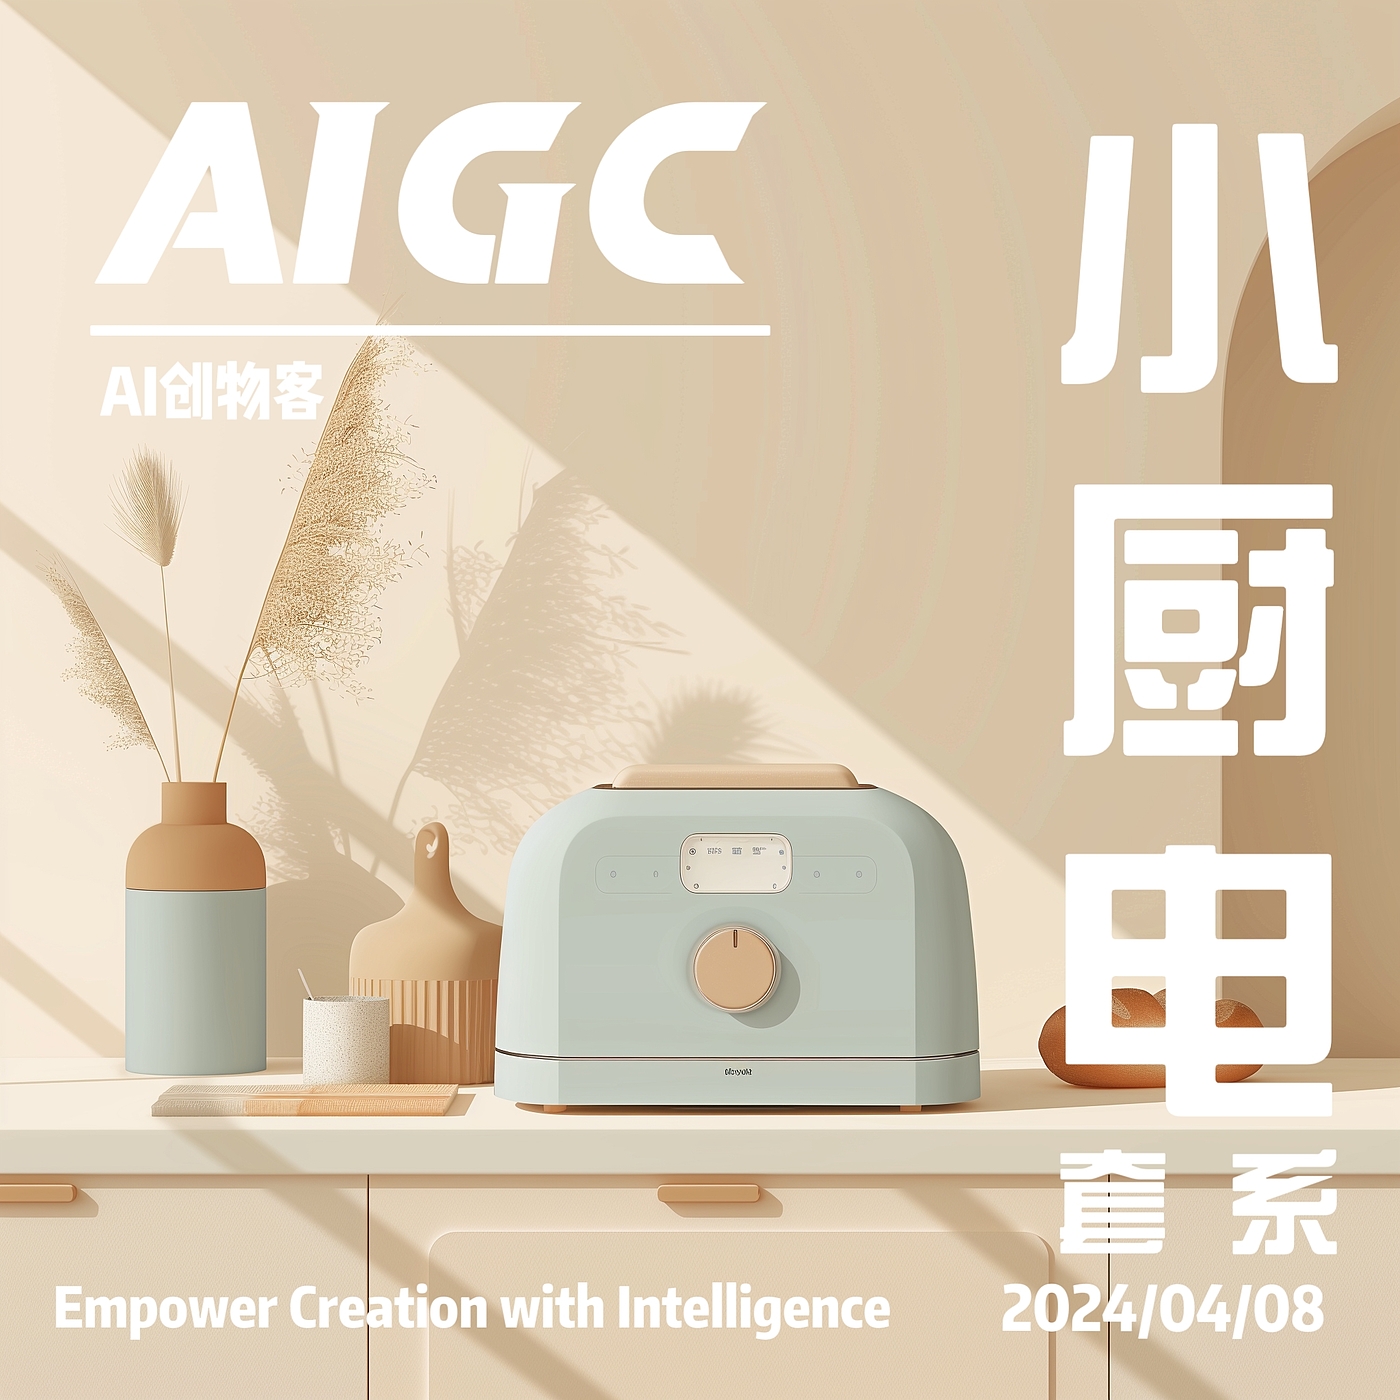 AIGC，AI设计，工业设计，产品设计，小家电，套系产品，